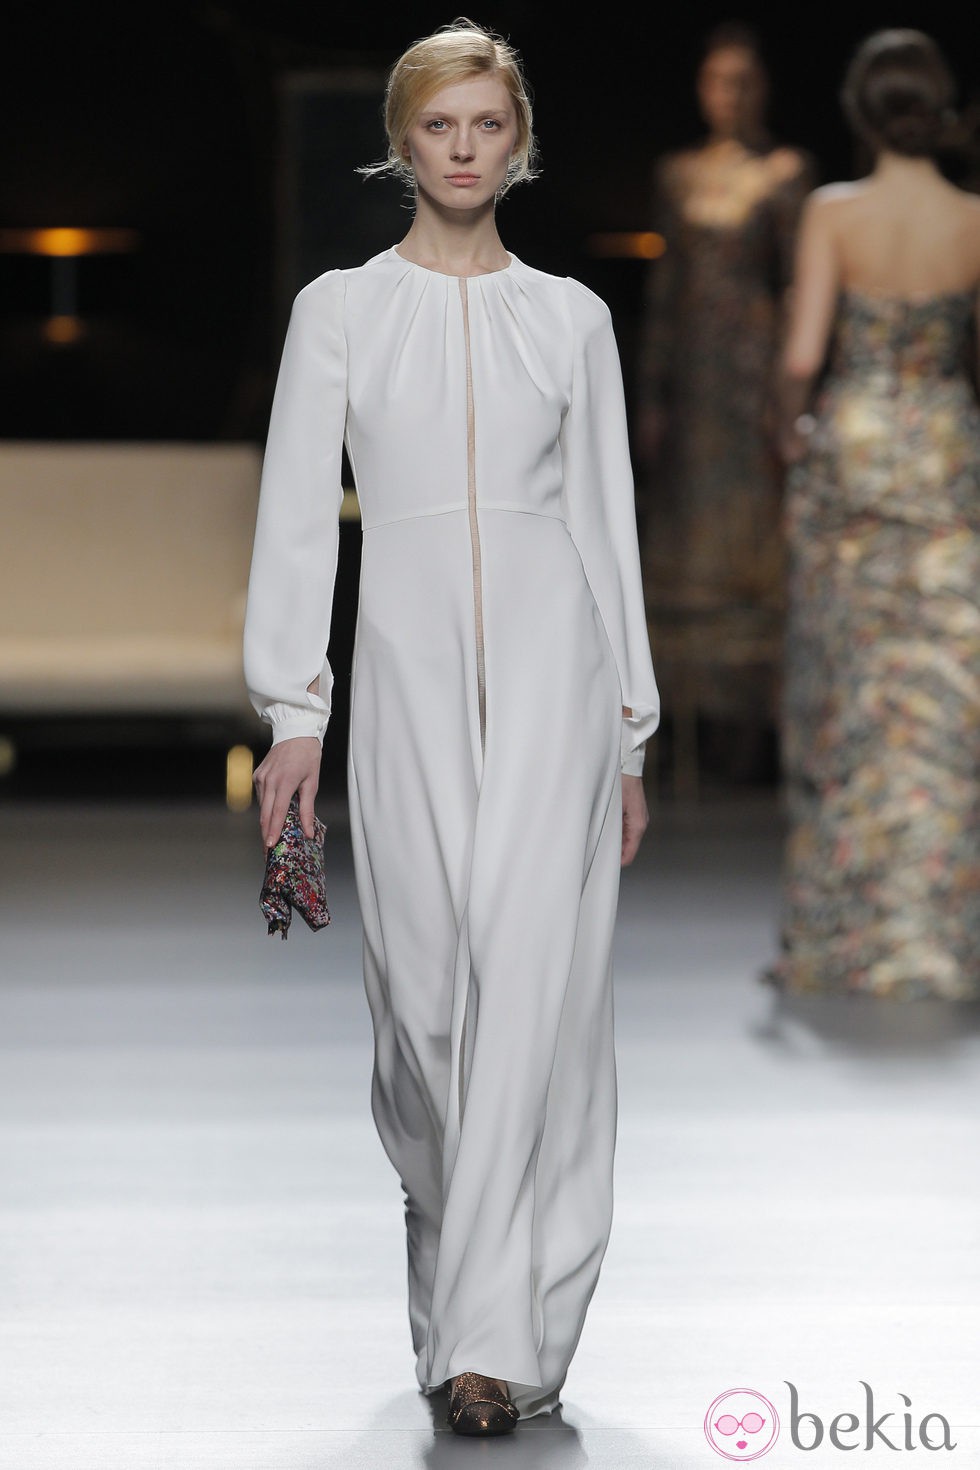 Vestido con cremallera de la colección otoño/invierno 2013/2014 de Juanjo Oliva en Madrid Fashion Week